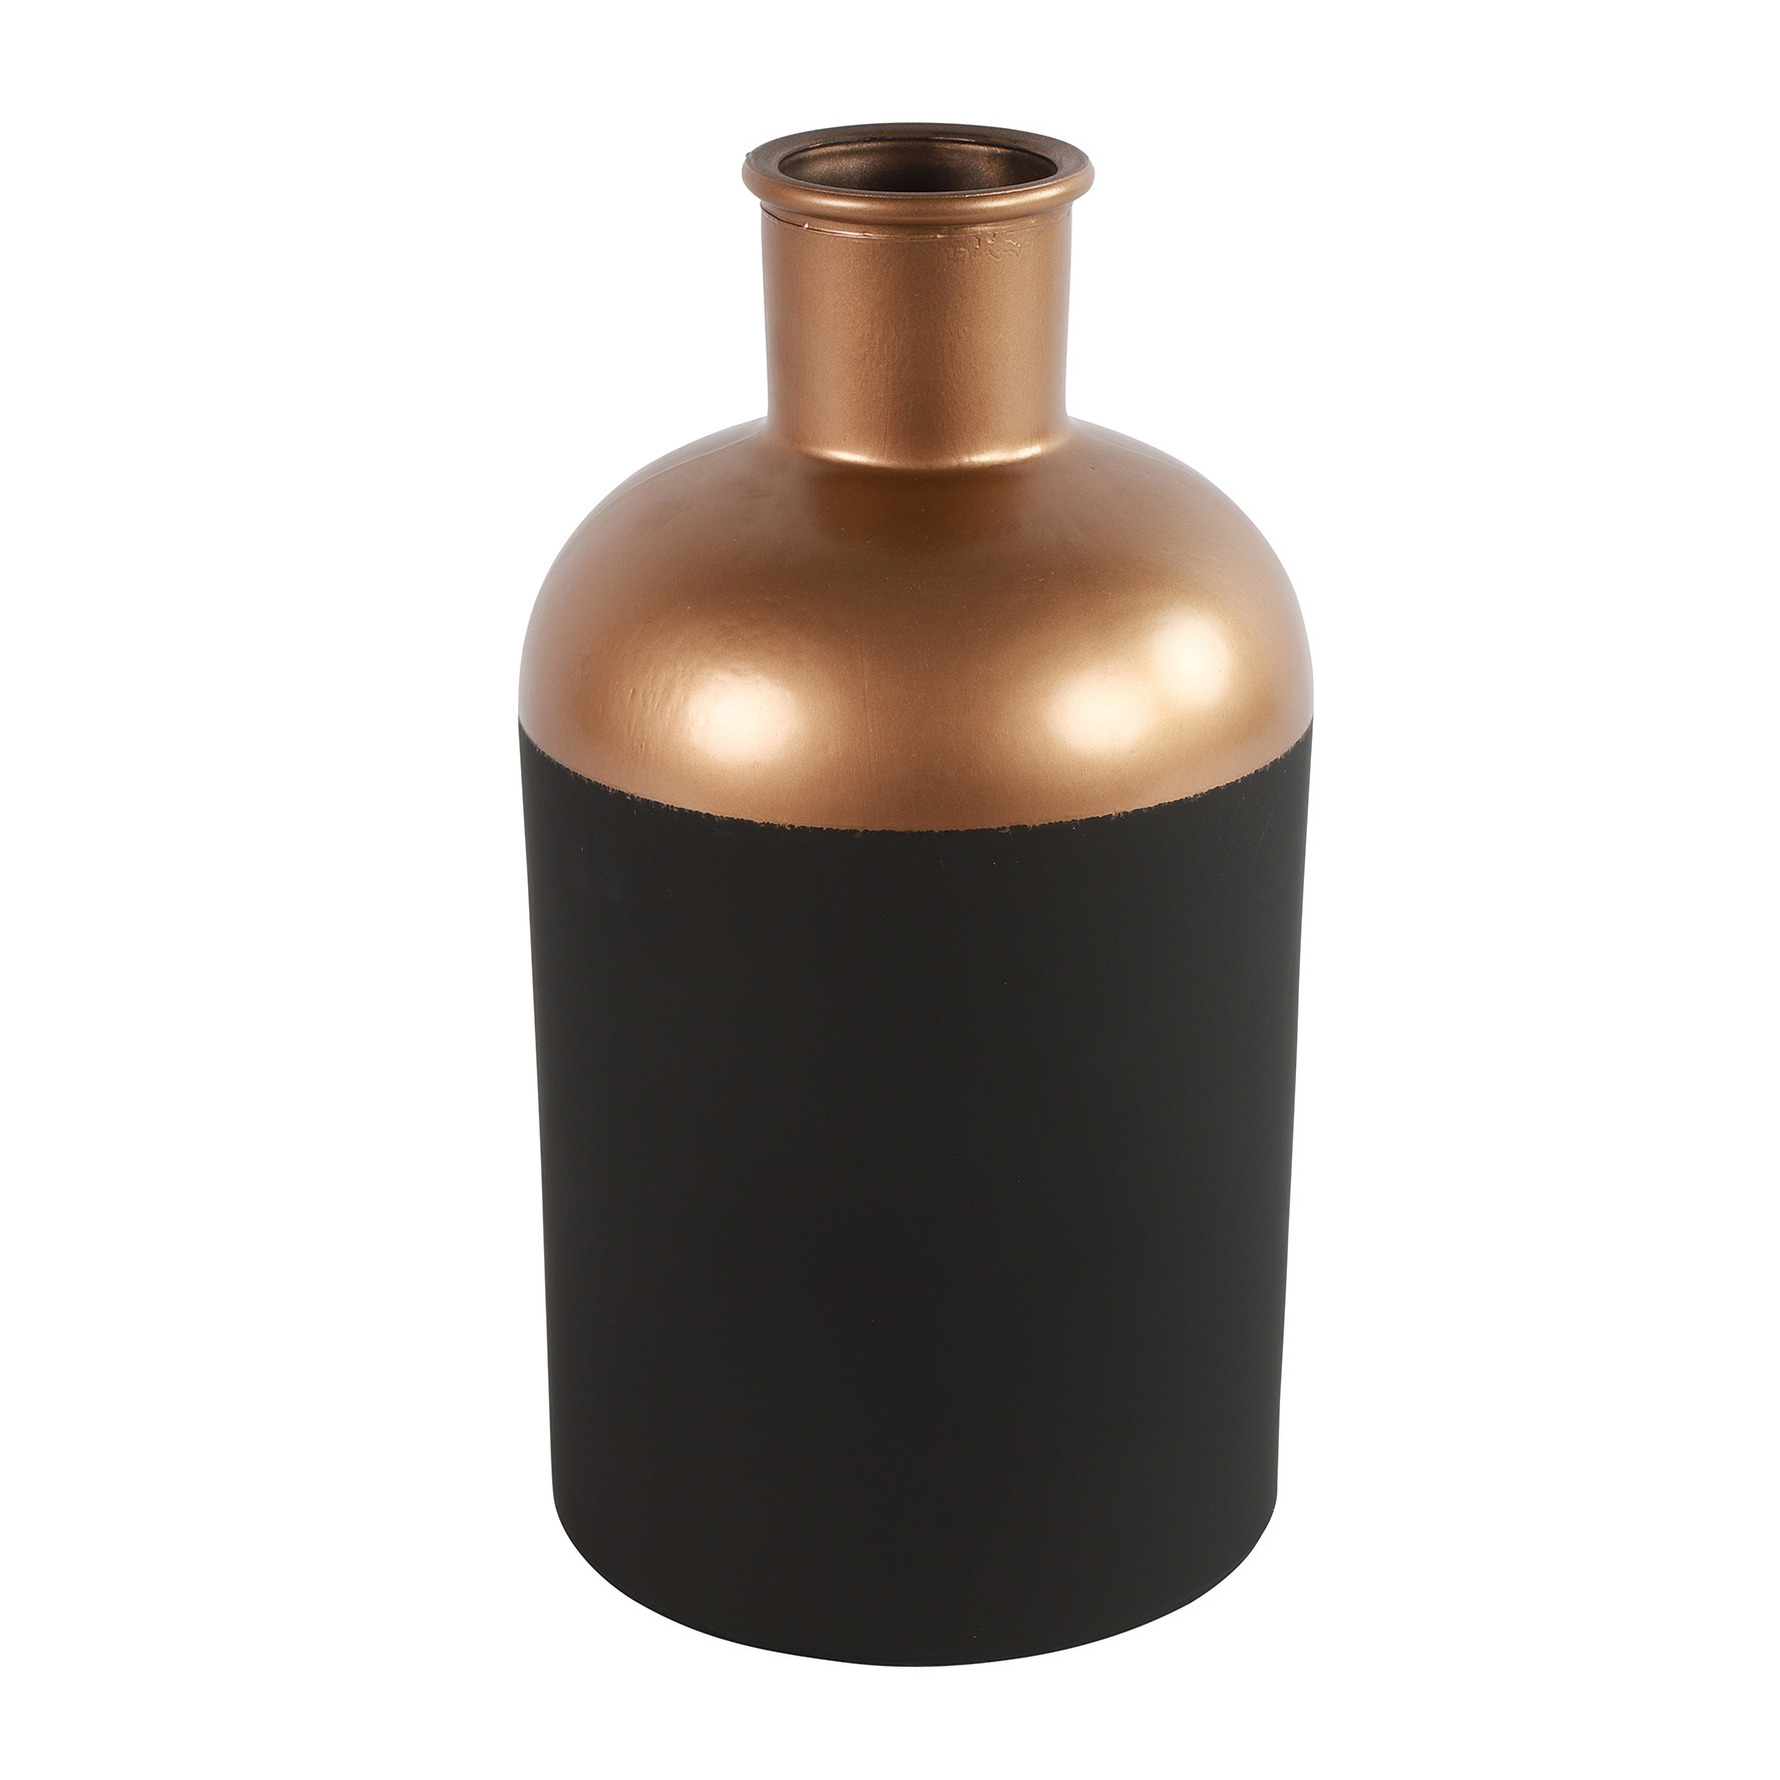 Countryfield Bloemen of deco vaas zwart-koper glas luxe fles vorm D17 x H31 cm